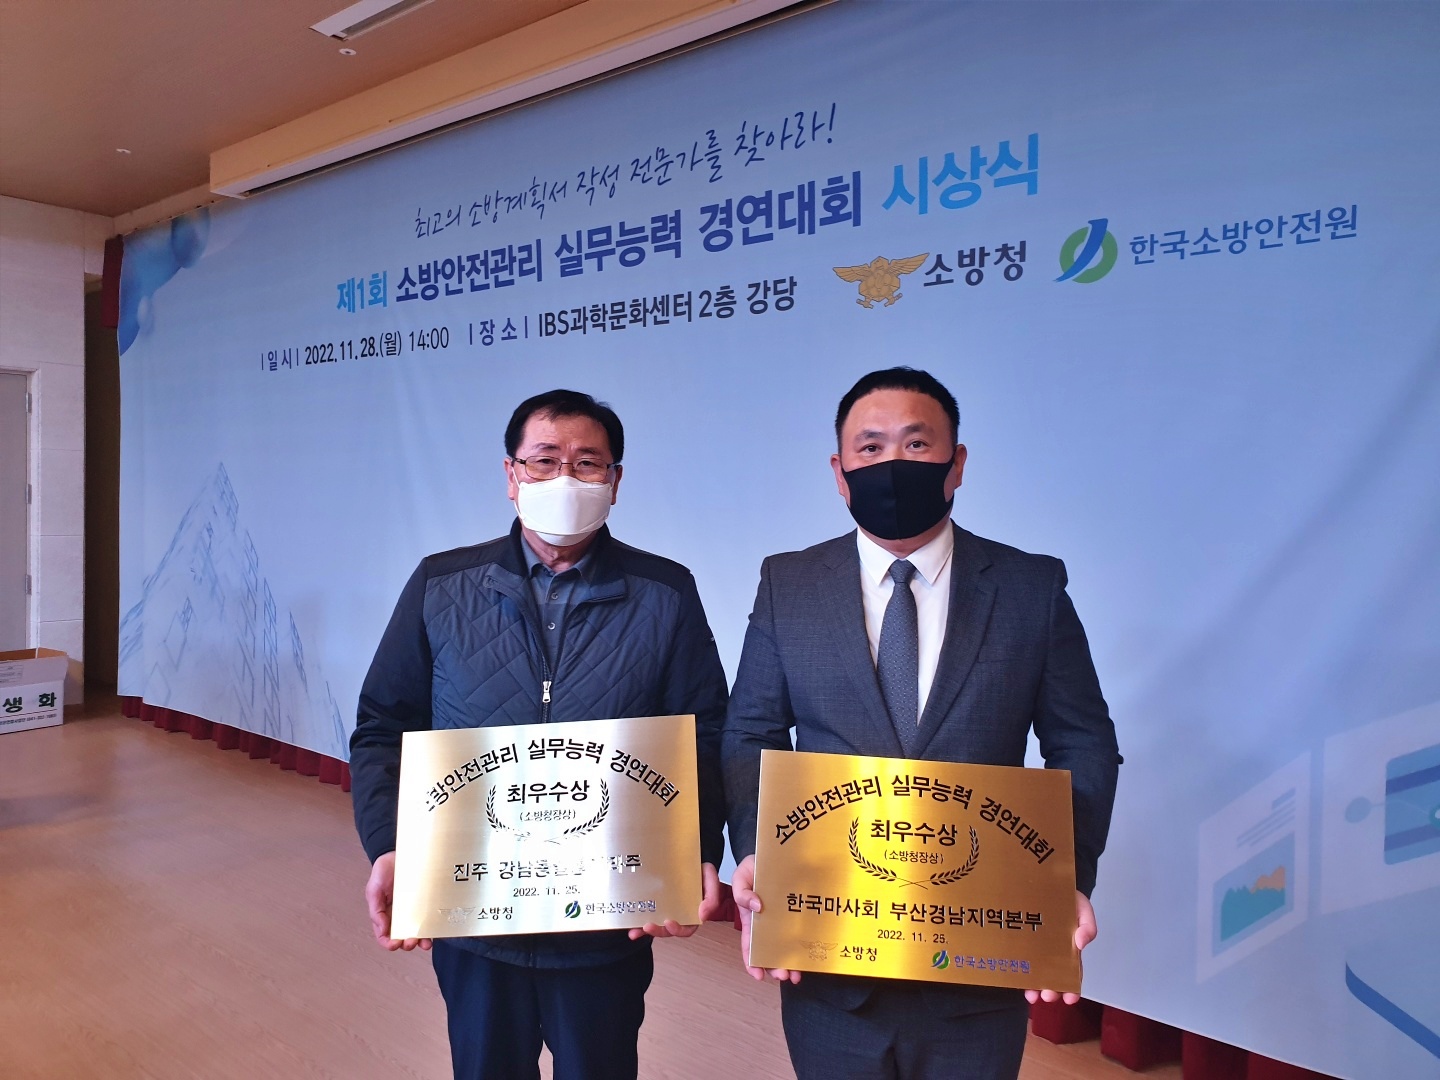 수상자(왼진주일동미라주,오한국마사회).jpg